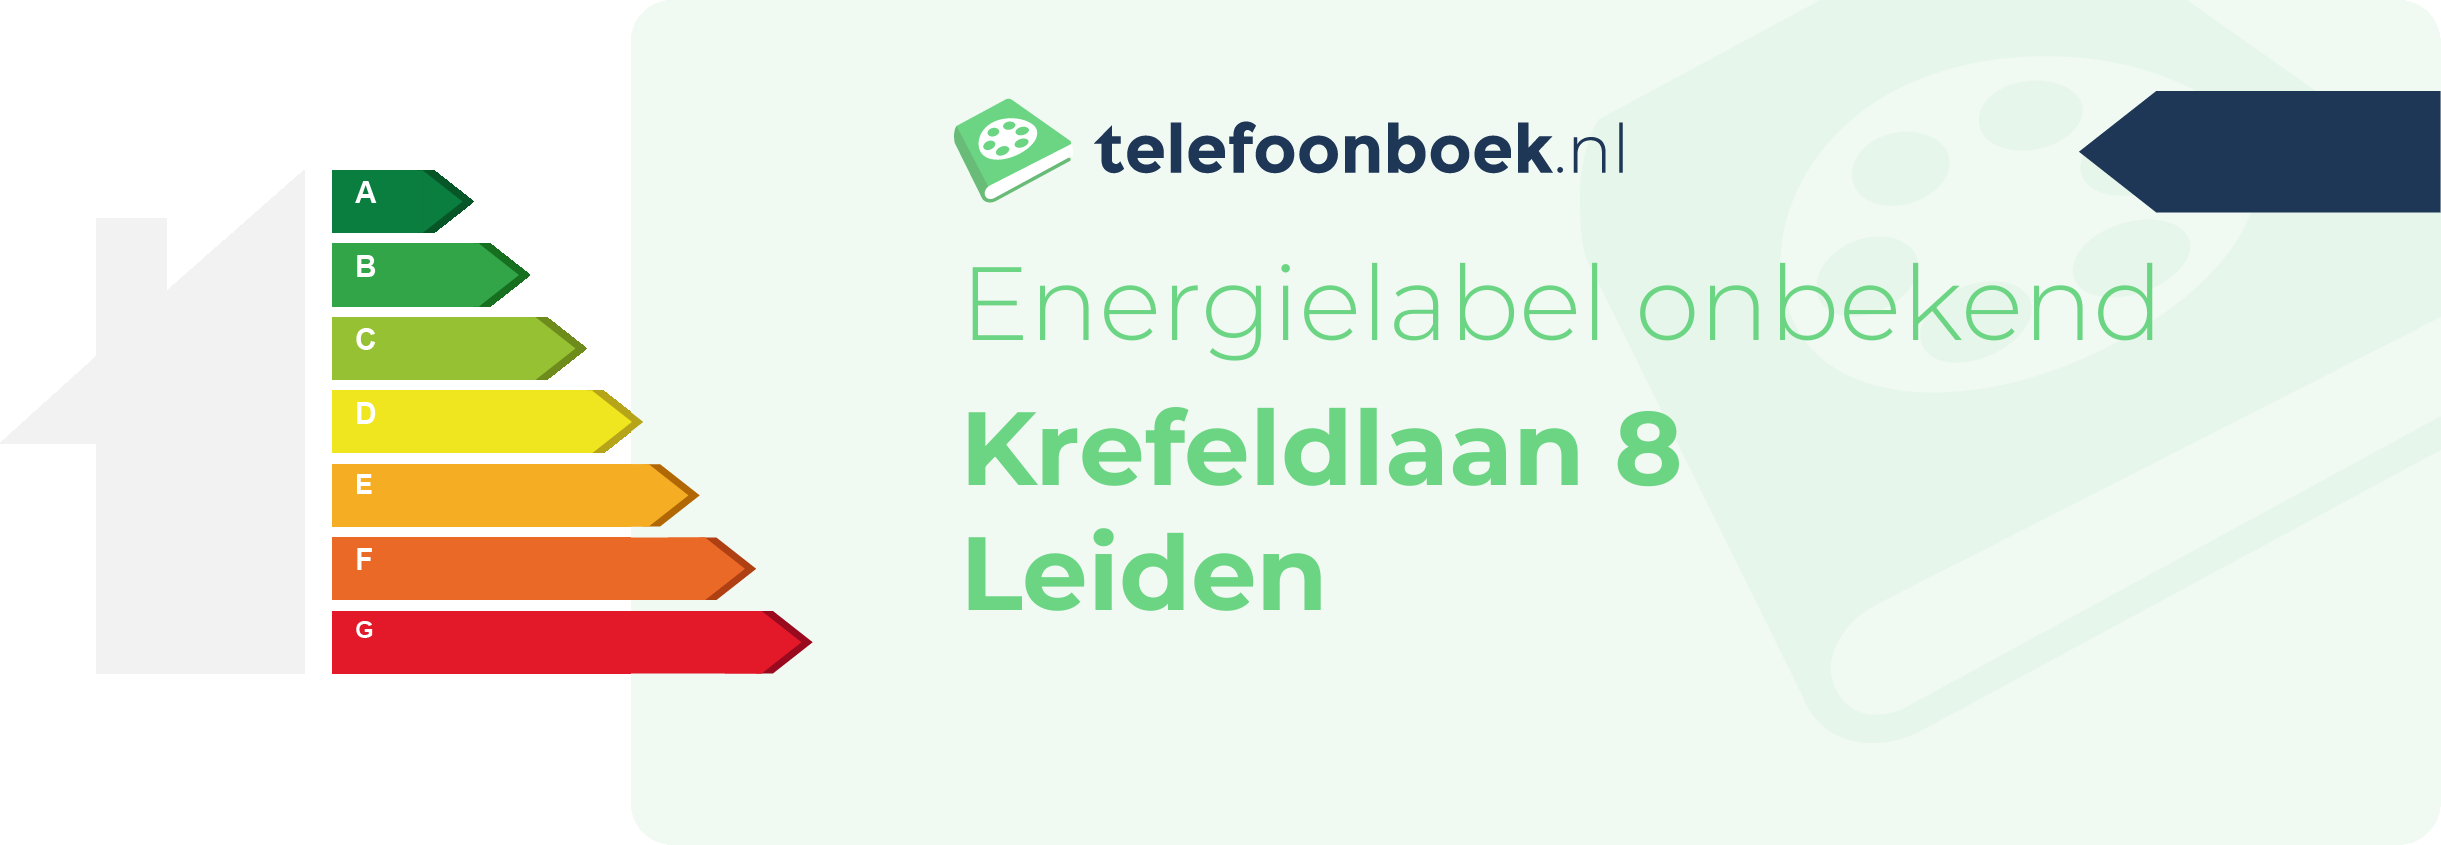 Energielabel Krefeldlaan 8 Leiden